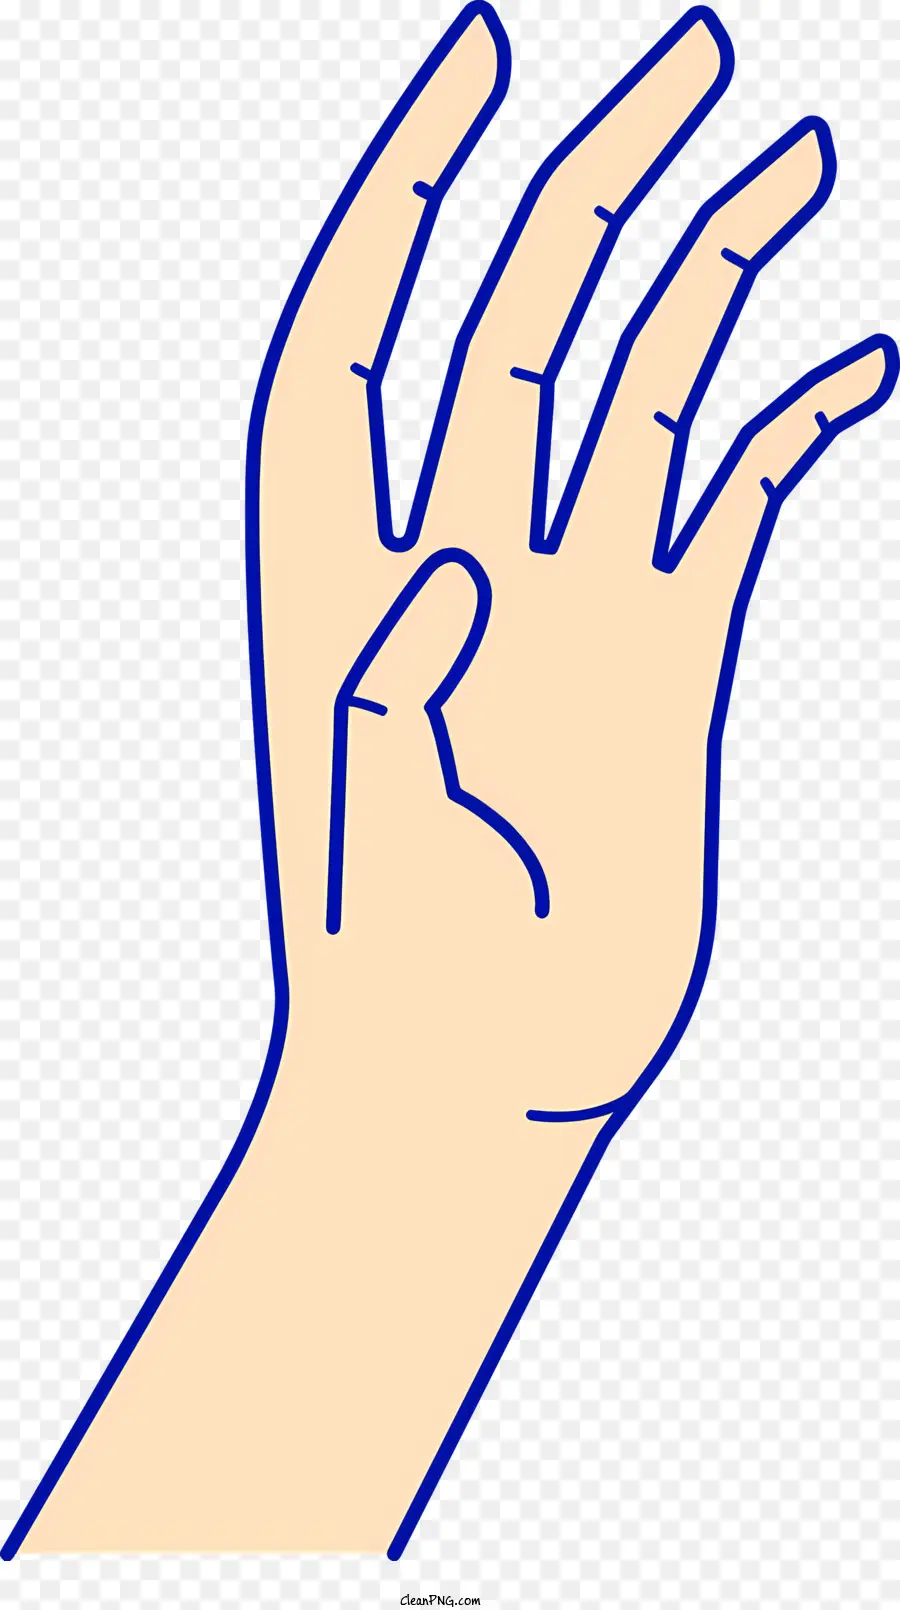 Biểu tượng ngón tay con người lan rộng nắm hoặc giữ tay màu xanh - Tay xanh đơn giản vươn ra trên nền đen